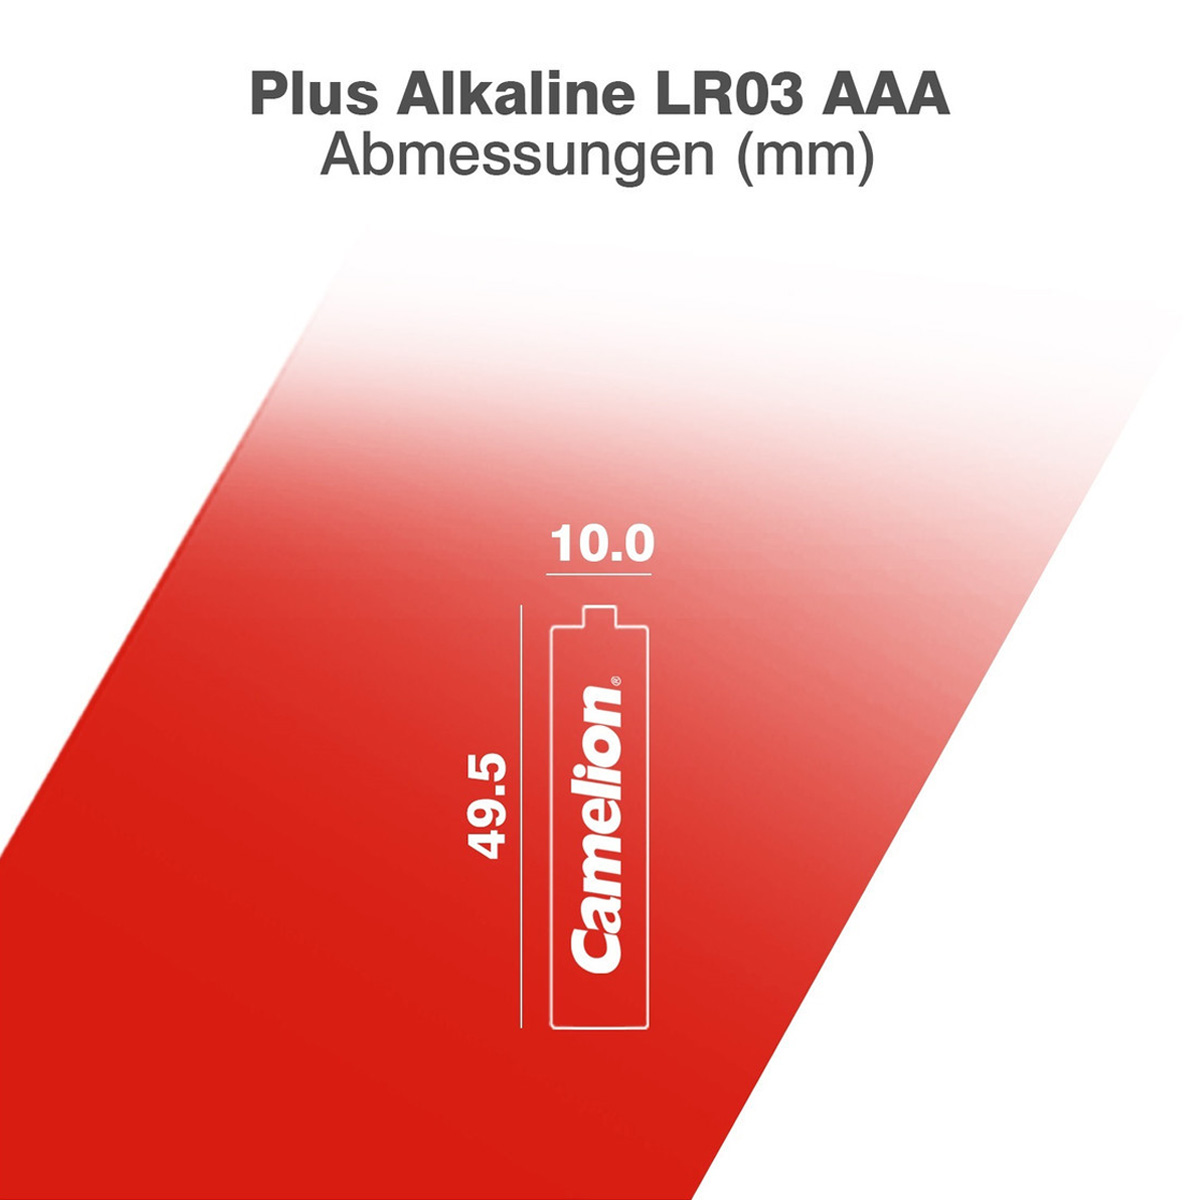 Batterie Mignon AAA LR3 1,5V PLUS Alkaline - Leistung auf Dauer - 8 Stück